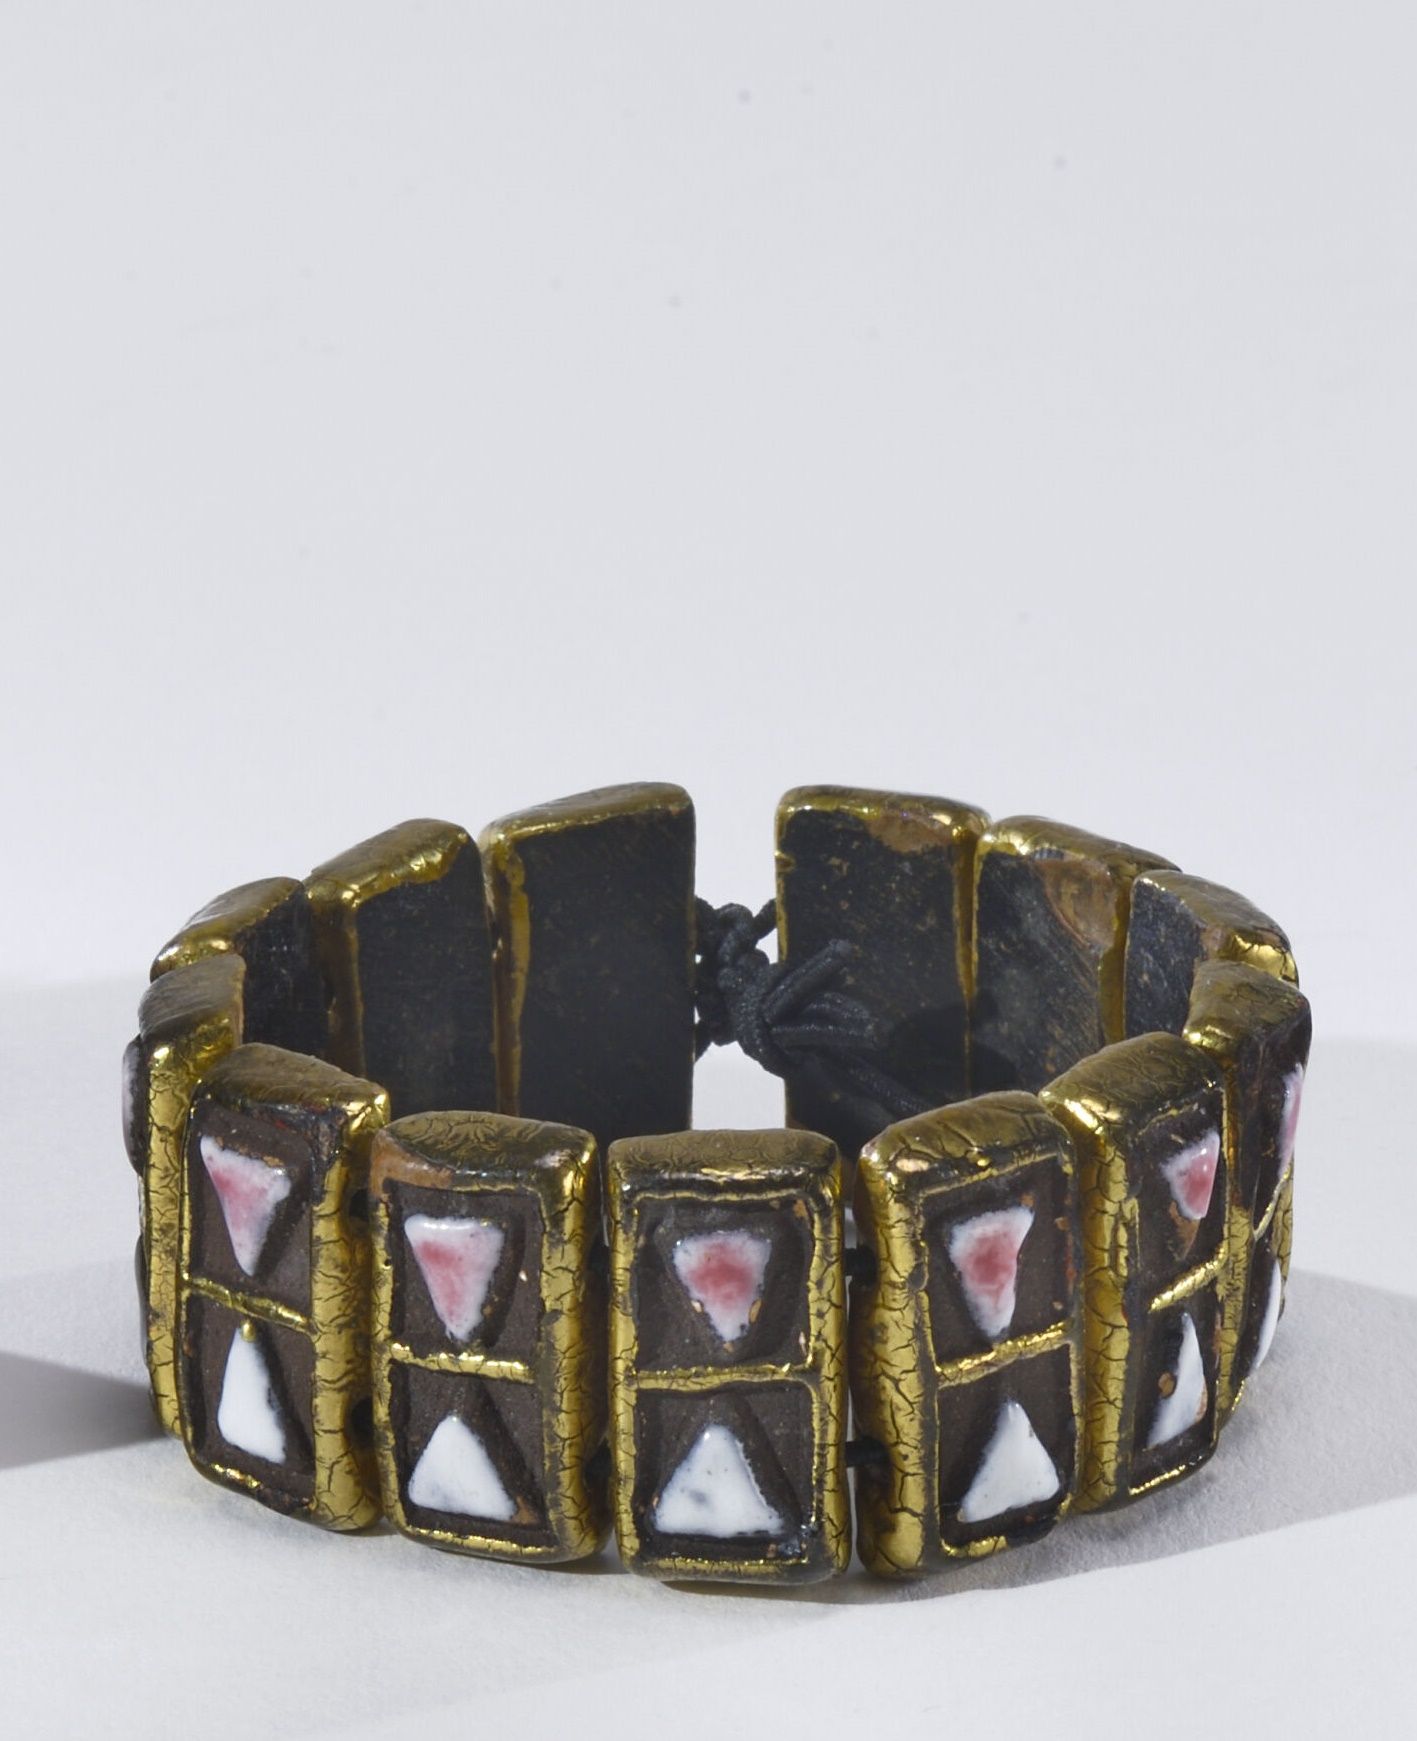 Null 米特-埃斯佩尔特 (1923 - 2020)

带釉面陶瓷元素的手链

L. 16 cm

使用状况，薄片